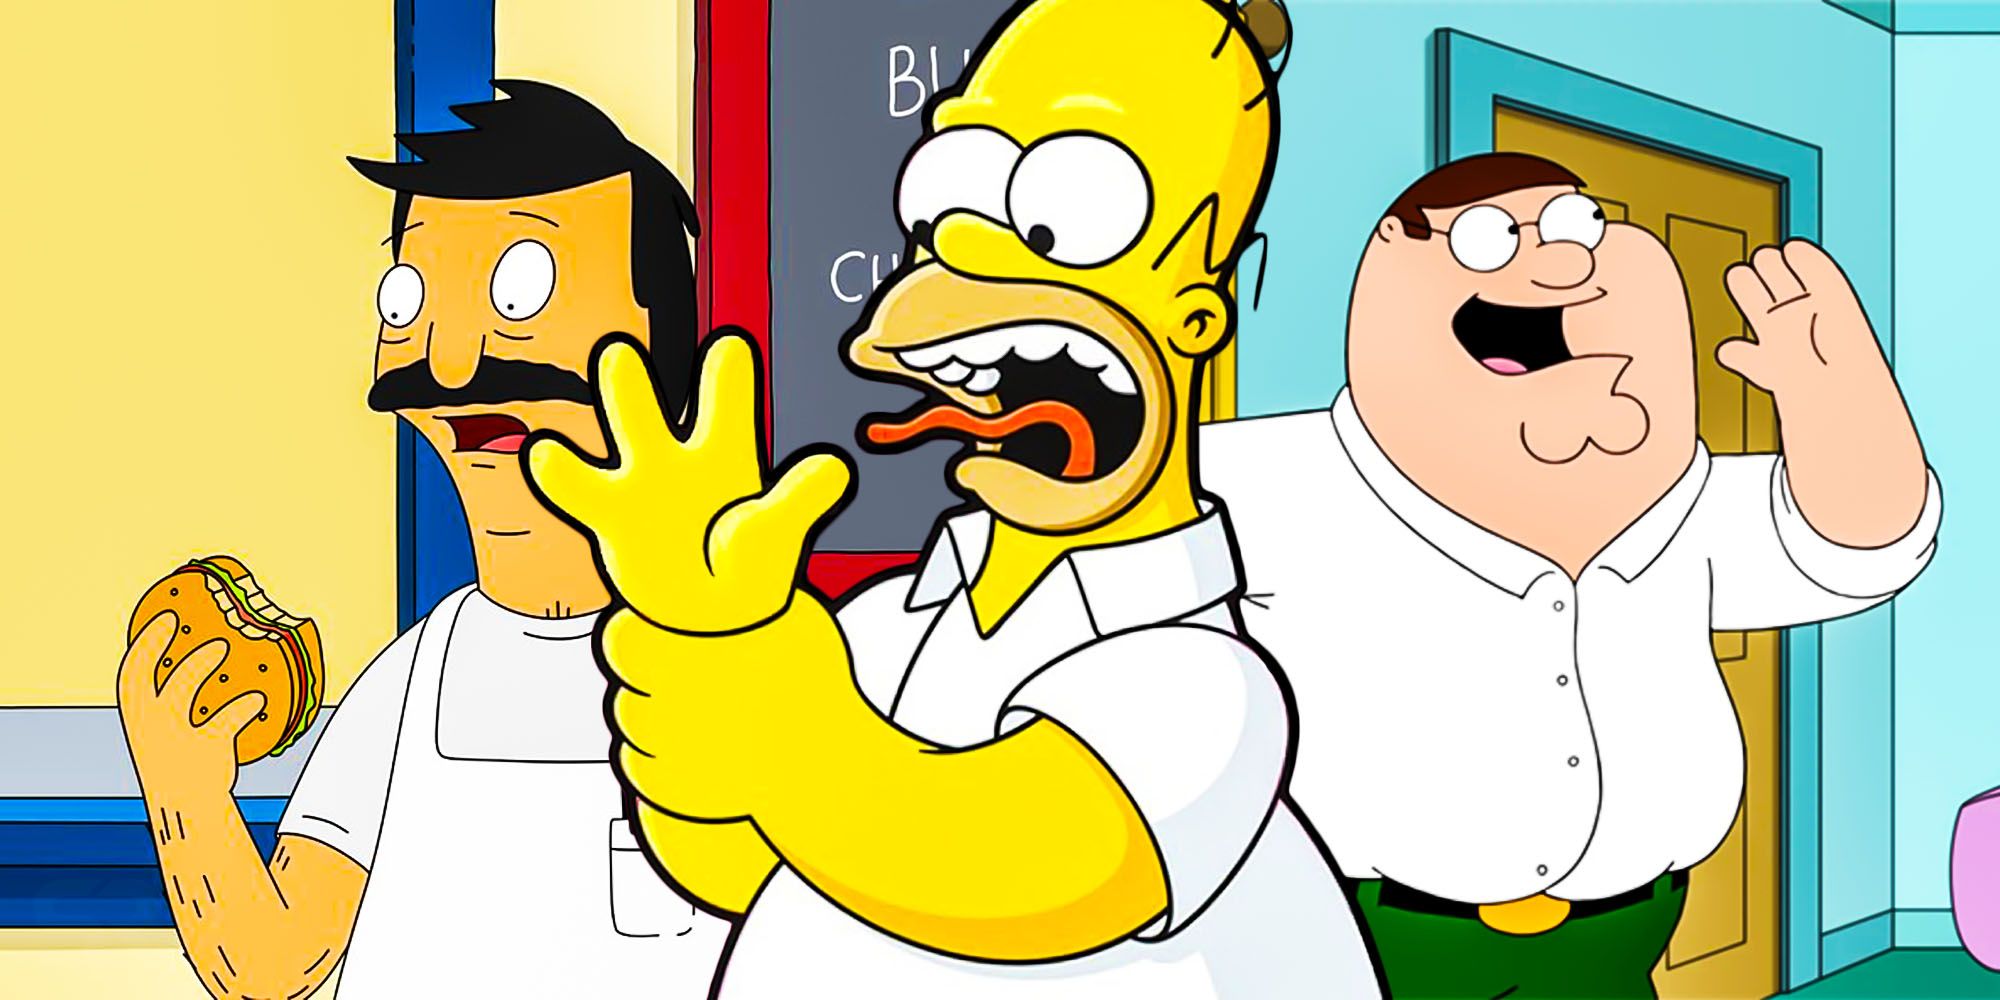 Por qué tantos personajes de dibujos animados solo tienen 4 dedos